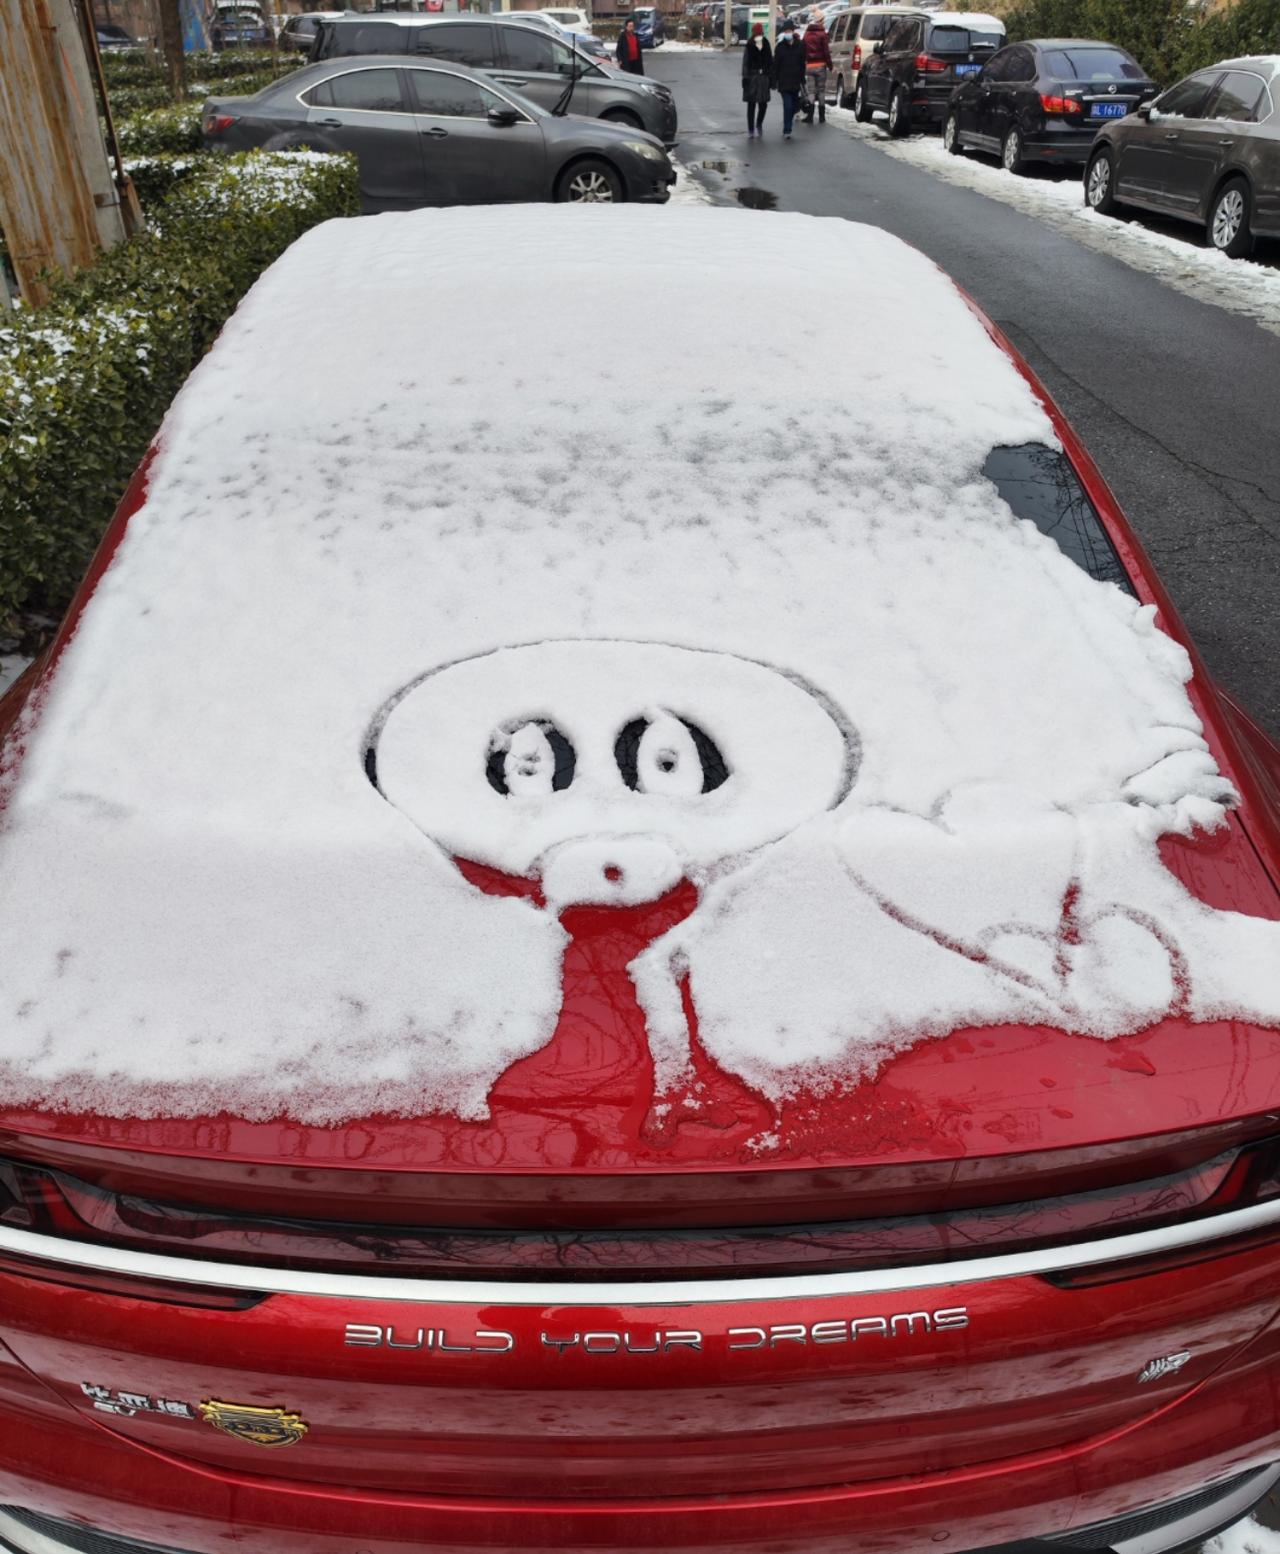 下雪汽车上画的图案图片